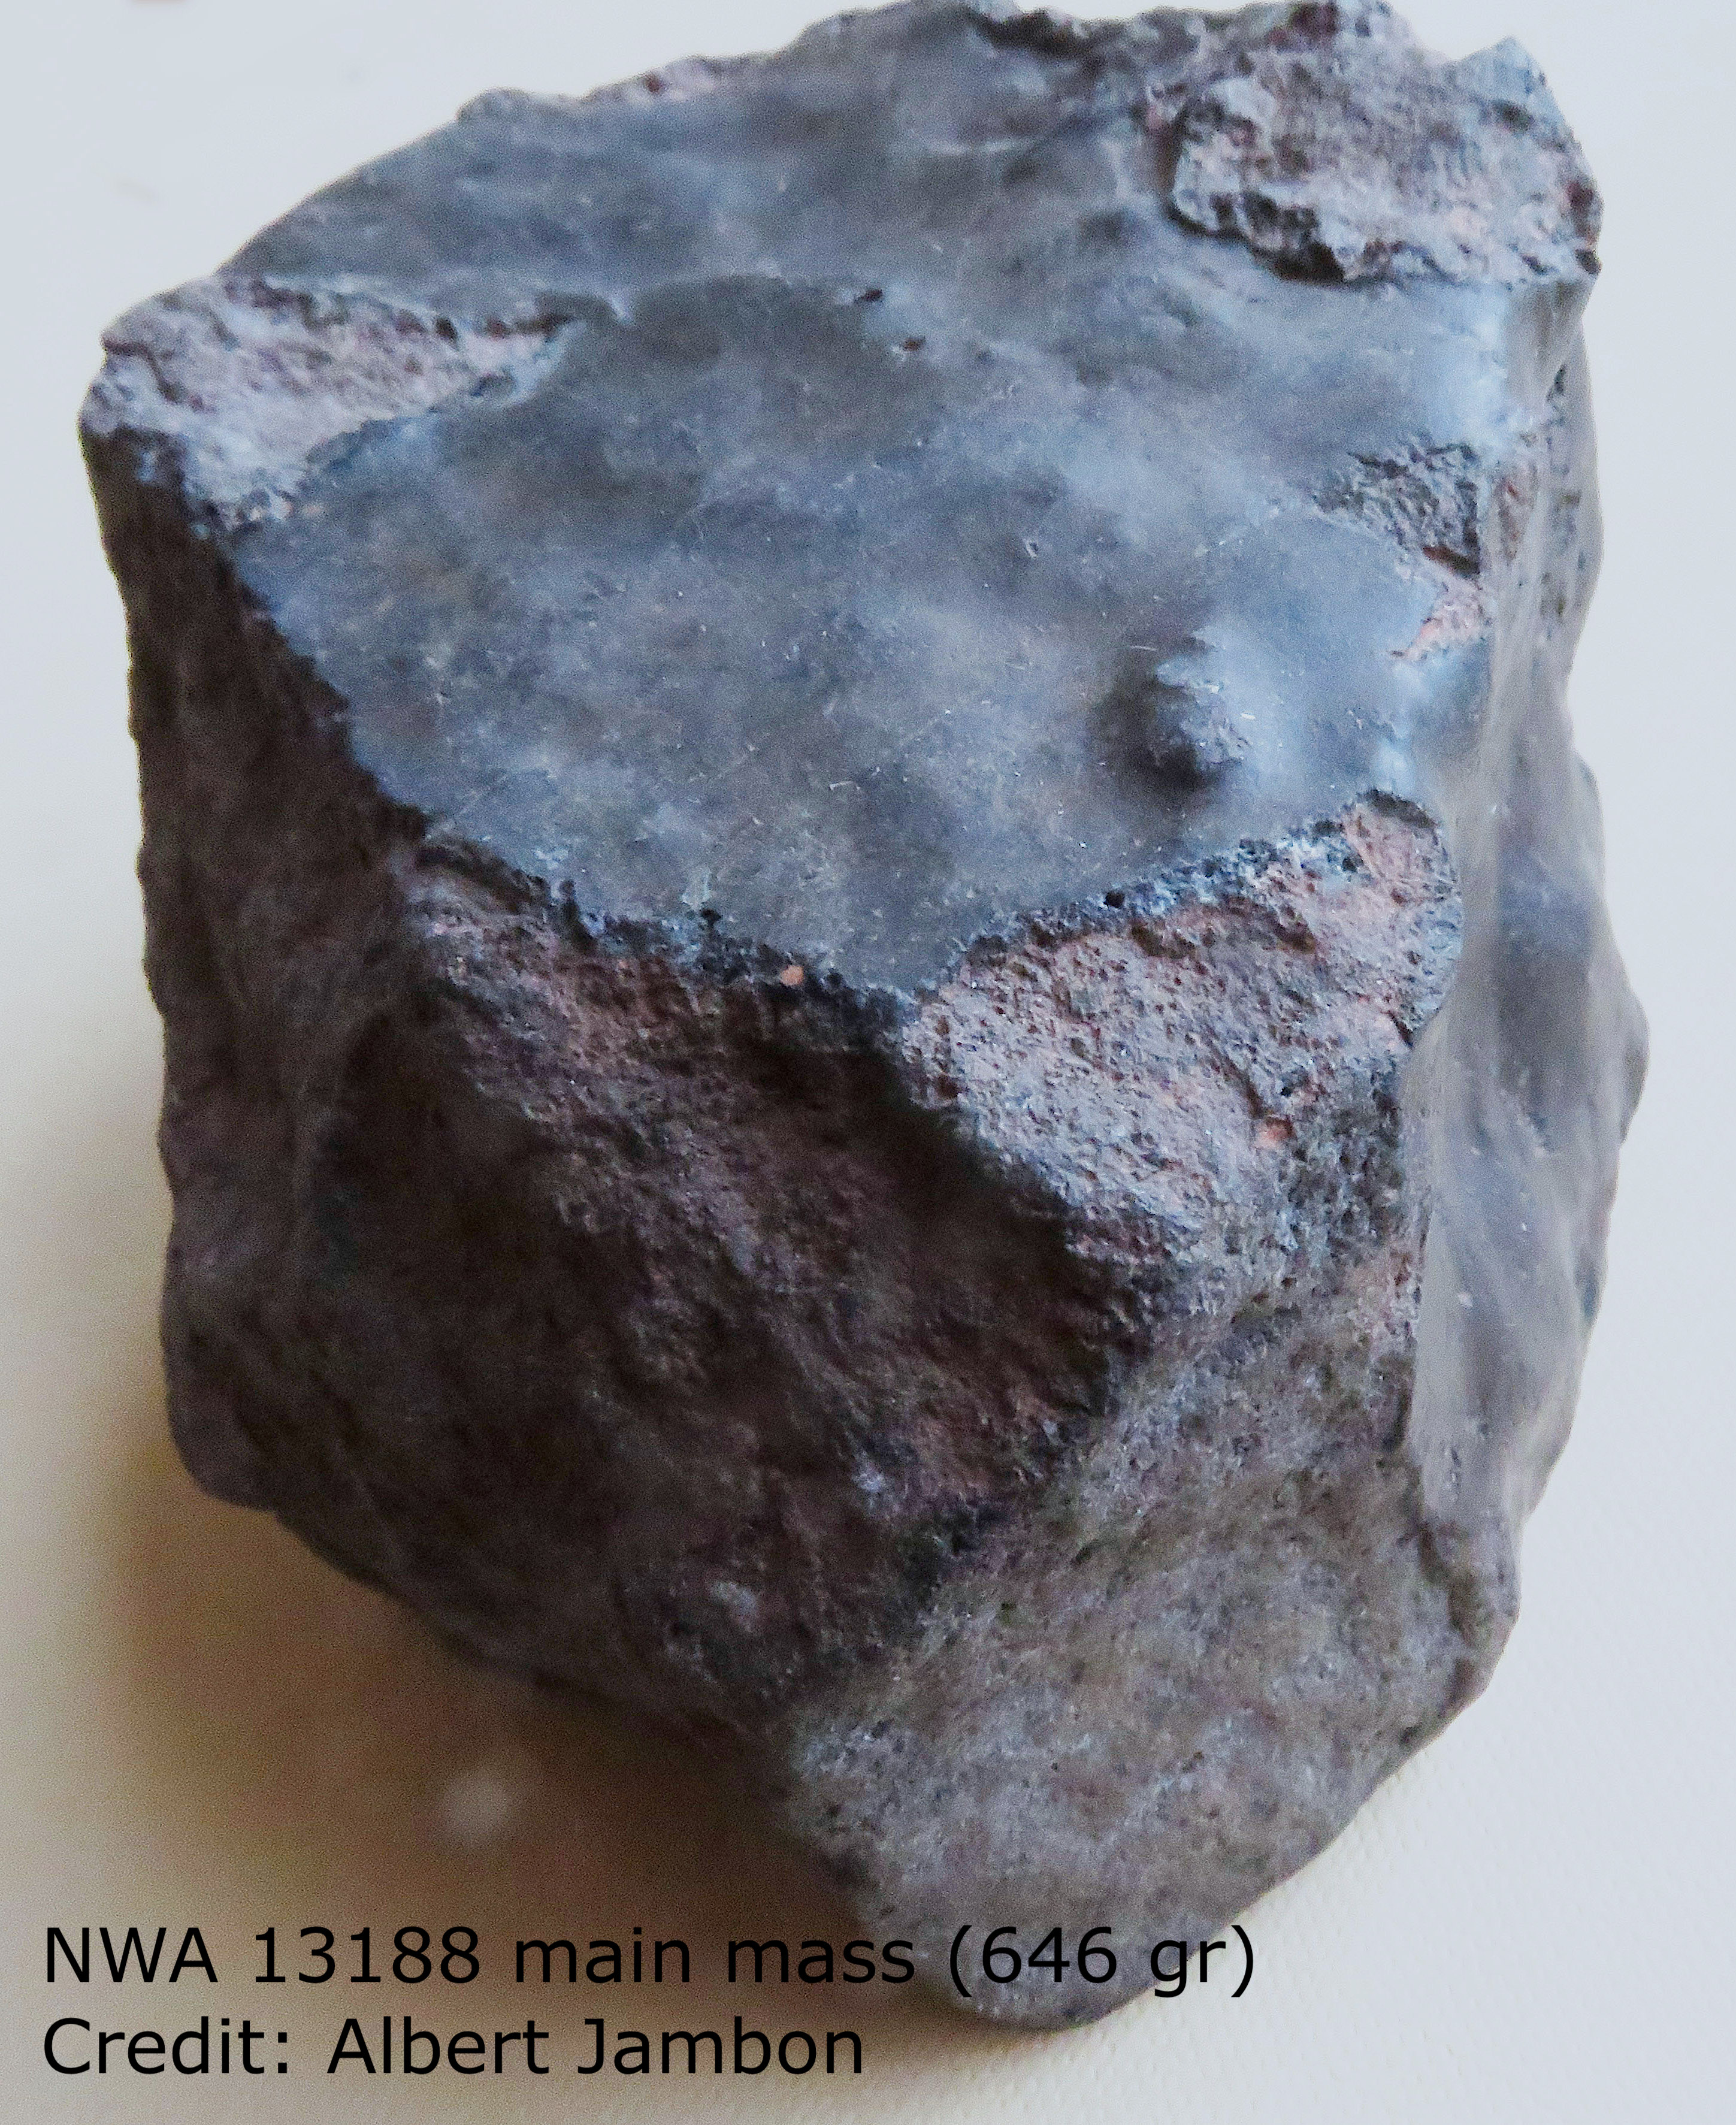 Uma imagem completa da rocha espacial é mostrada no título.